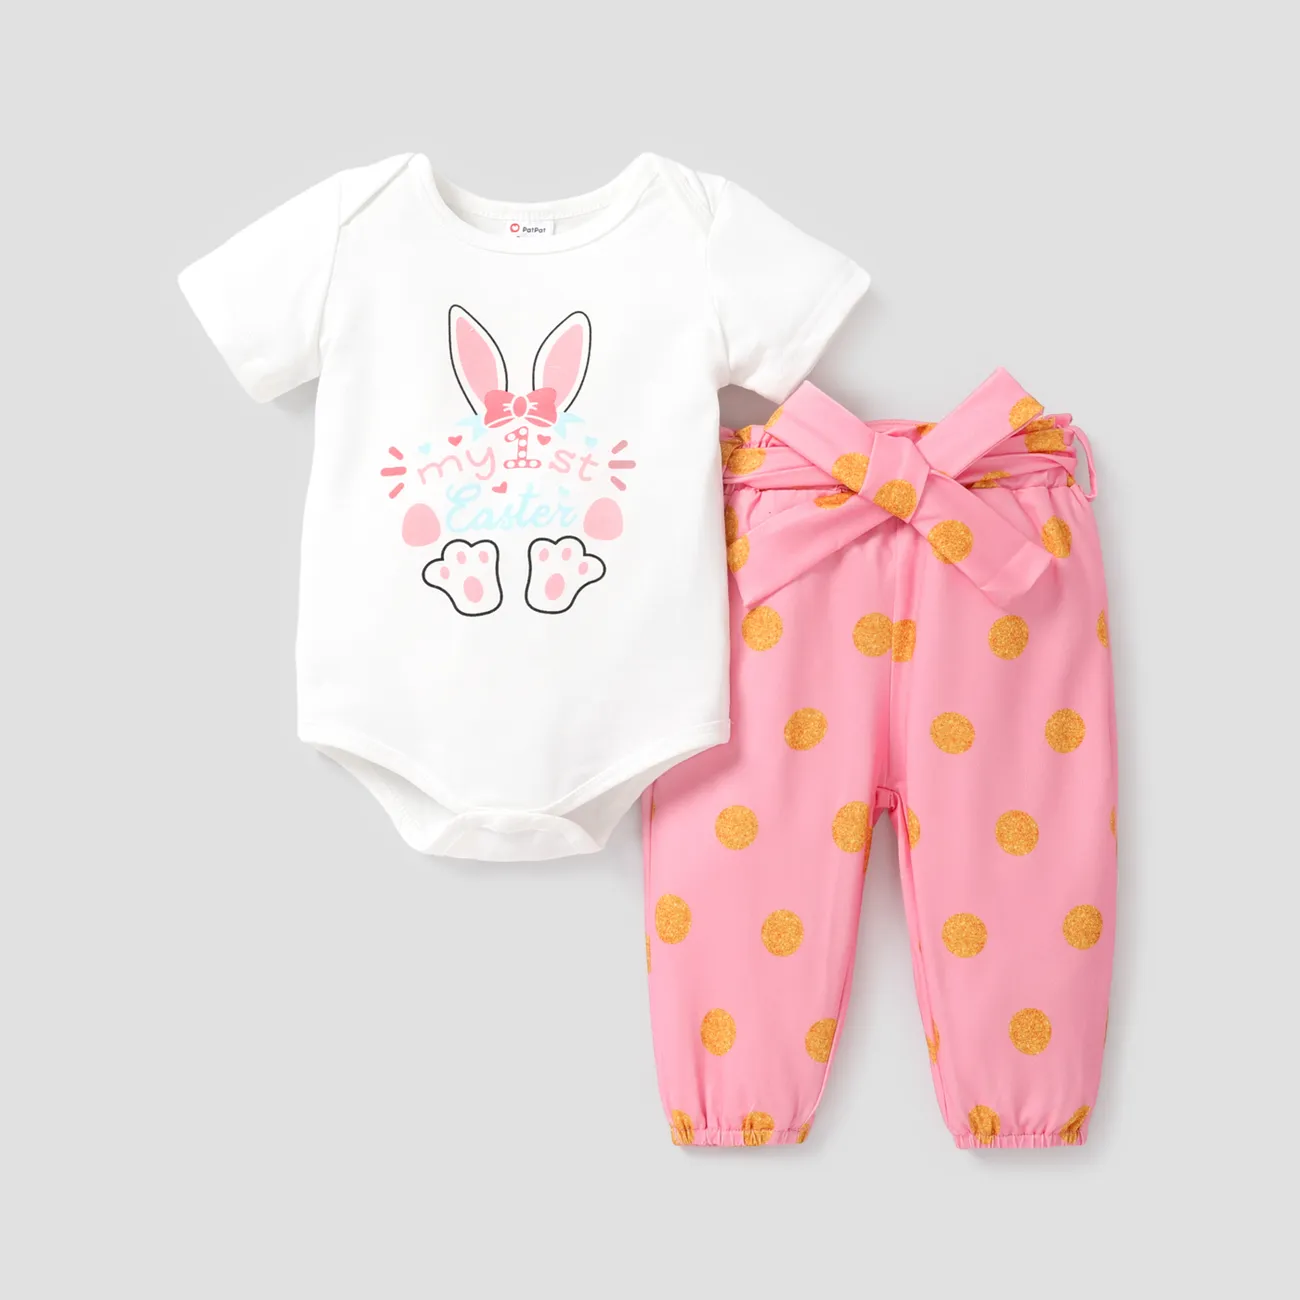 Pyjama bébé 0-3 mois fille patpat - PatPat - 1 mois